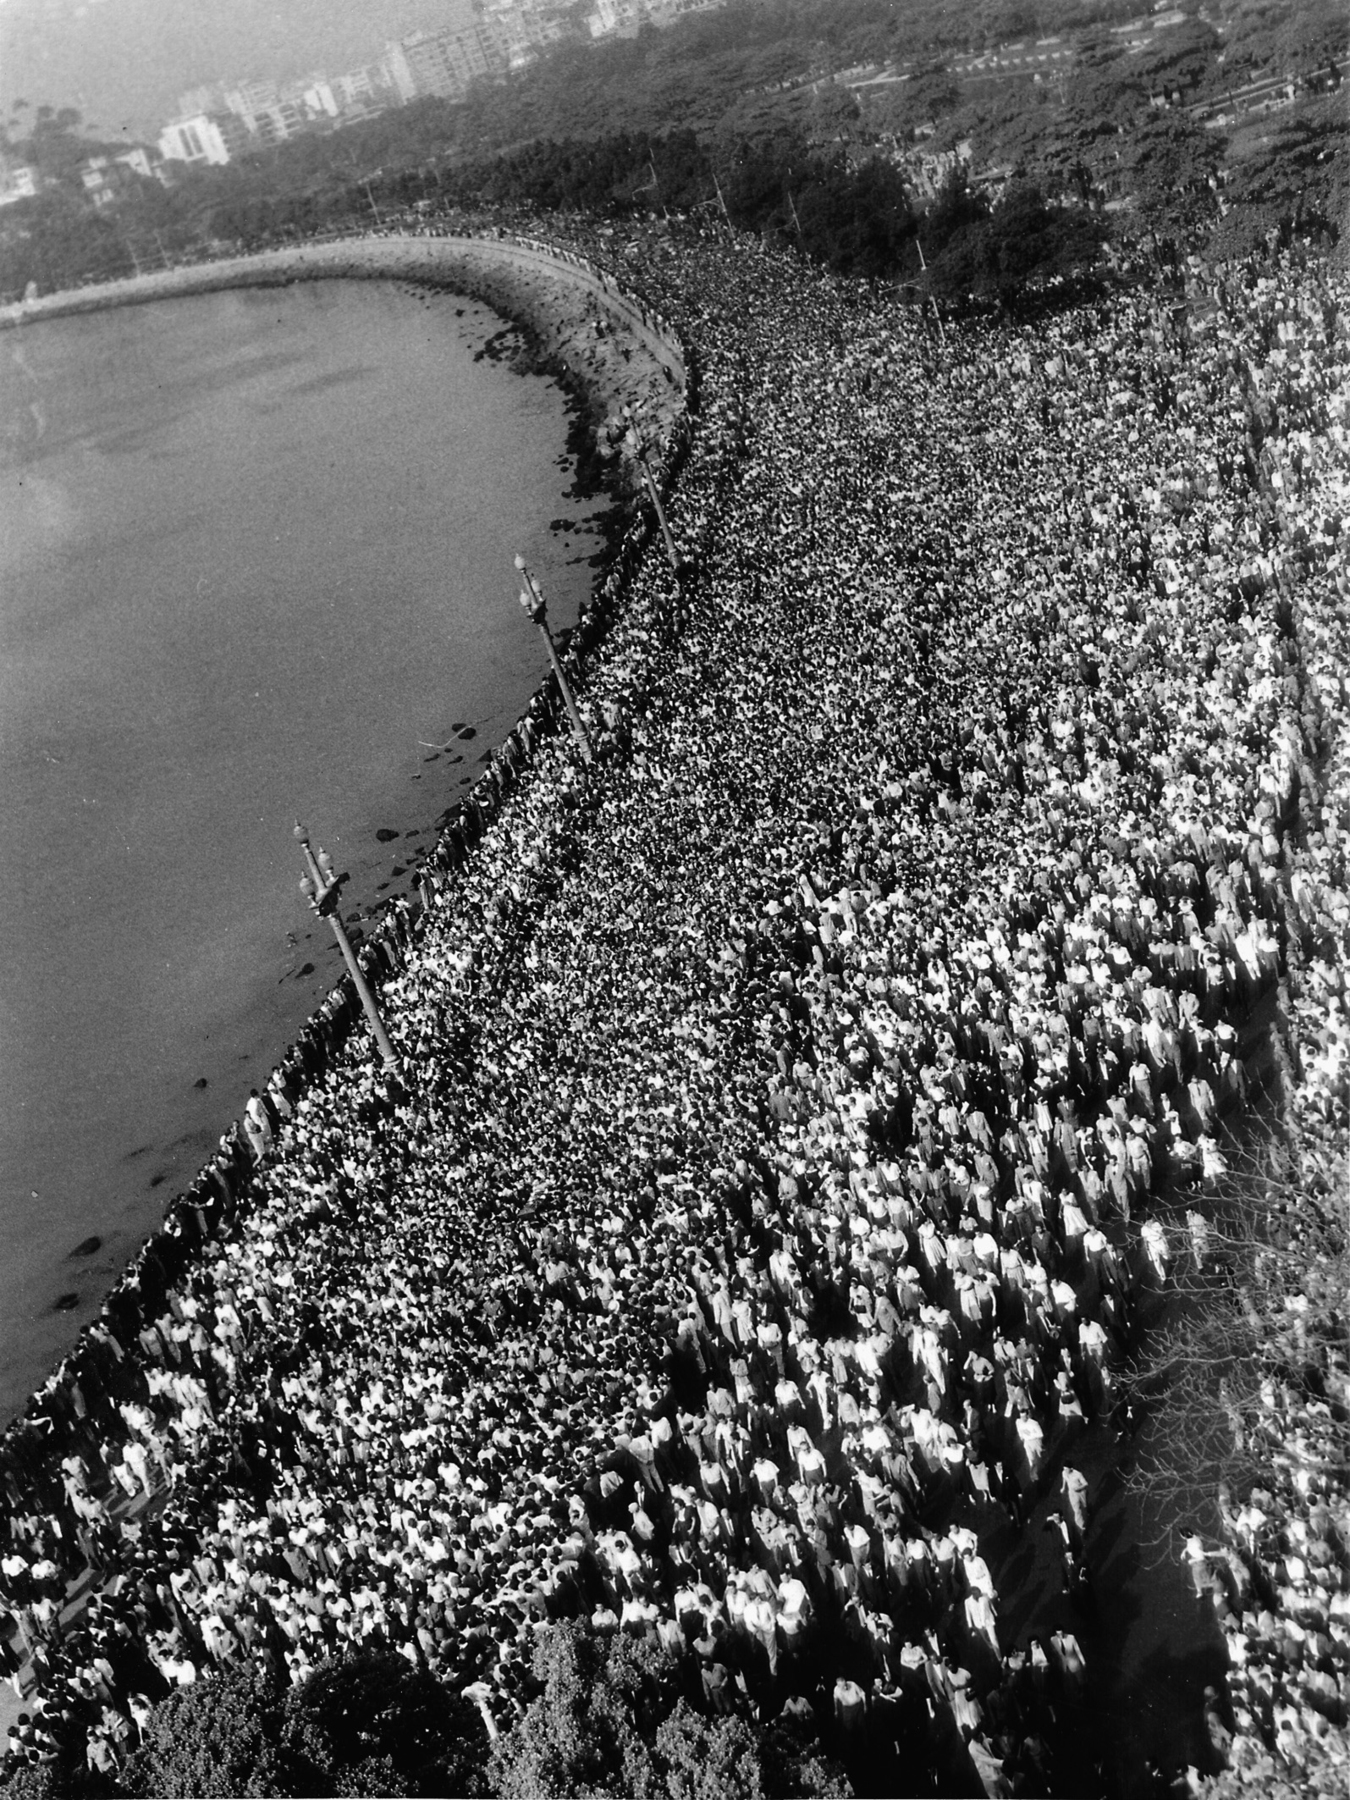 Fotografia em preto e branco. Vista aérea de uma multidão por toda a extensão da praia.